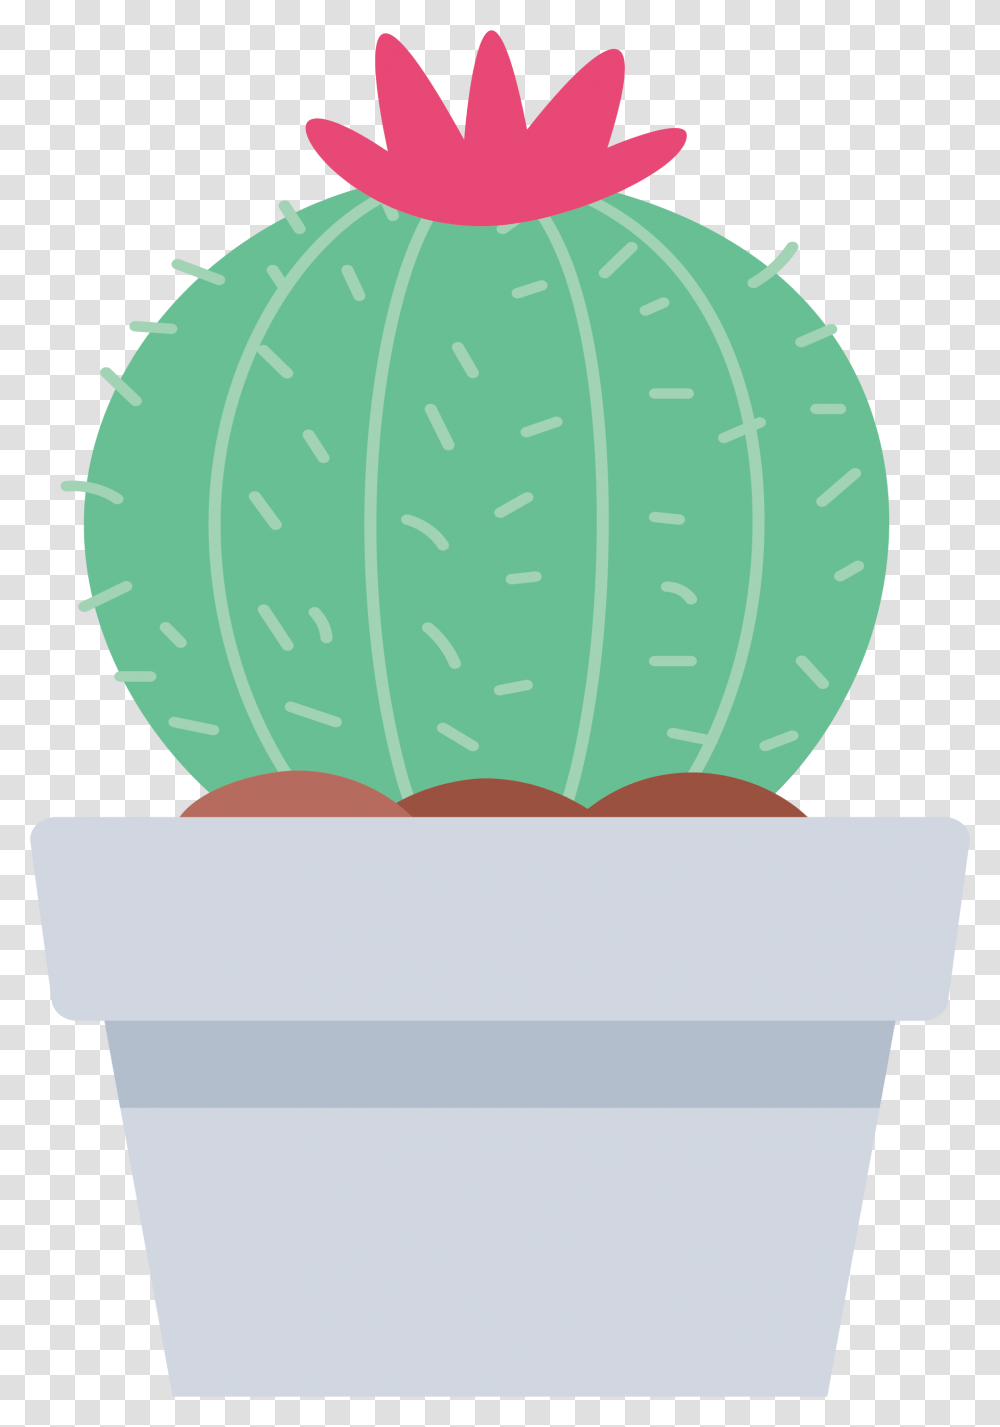 Cactaceae Euclidean Vector Clip Art Vector Cactus Transparente, Plant, Leaf, Vegetable, Food Transparent Png